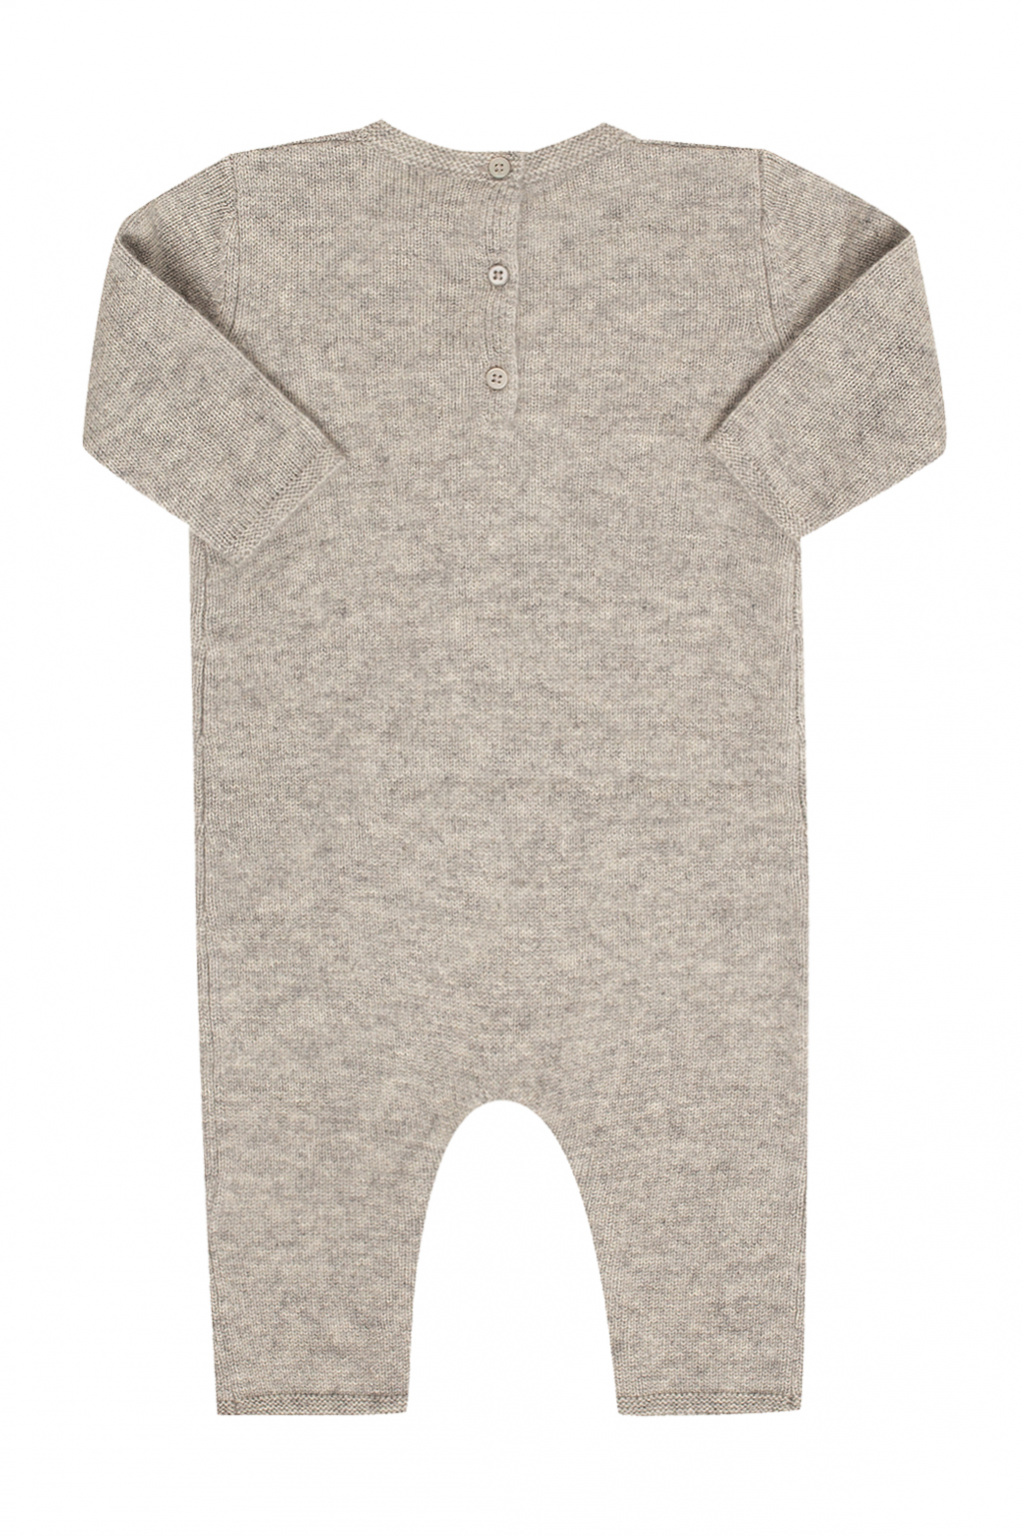 Bonpoint Cashmere romper suit | Kids's Baby (0-36 months) | Vitkac